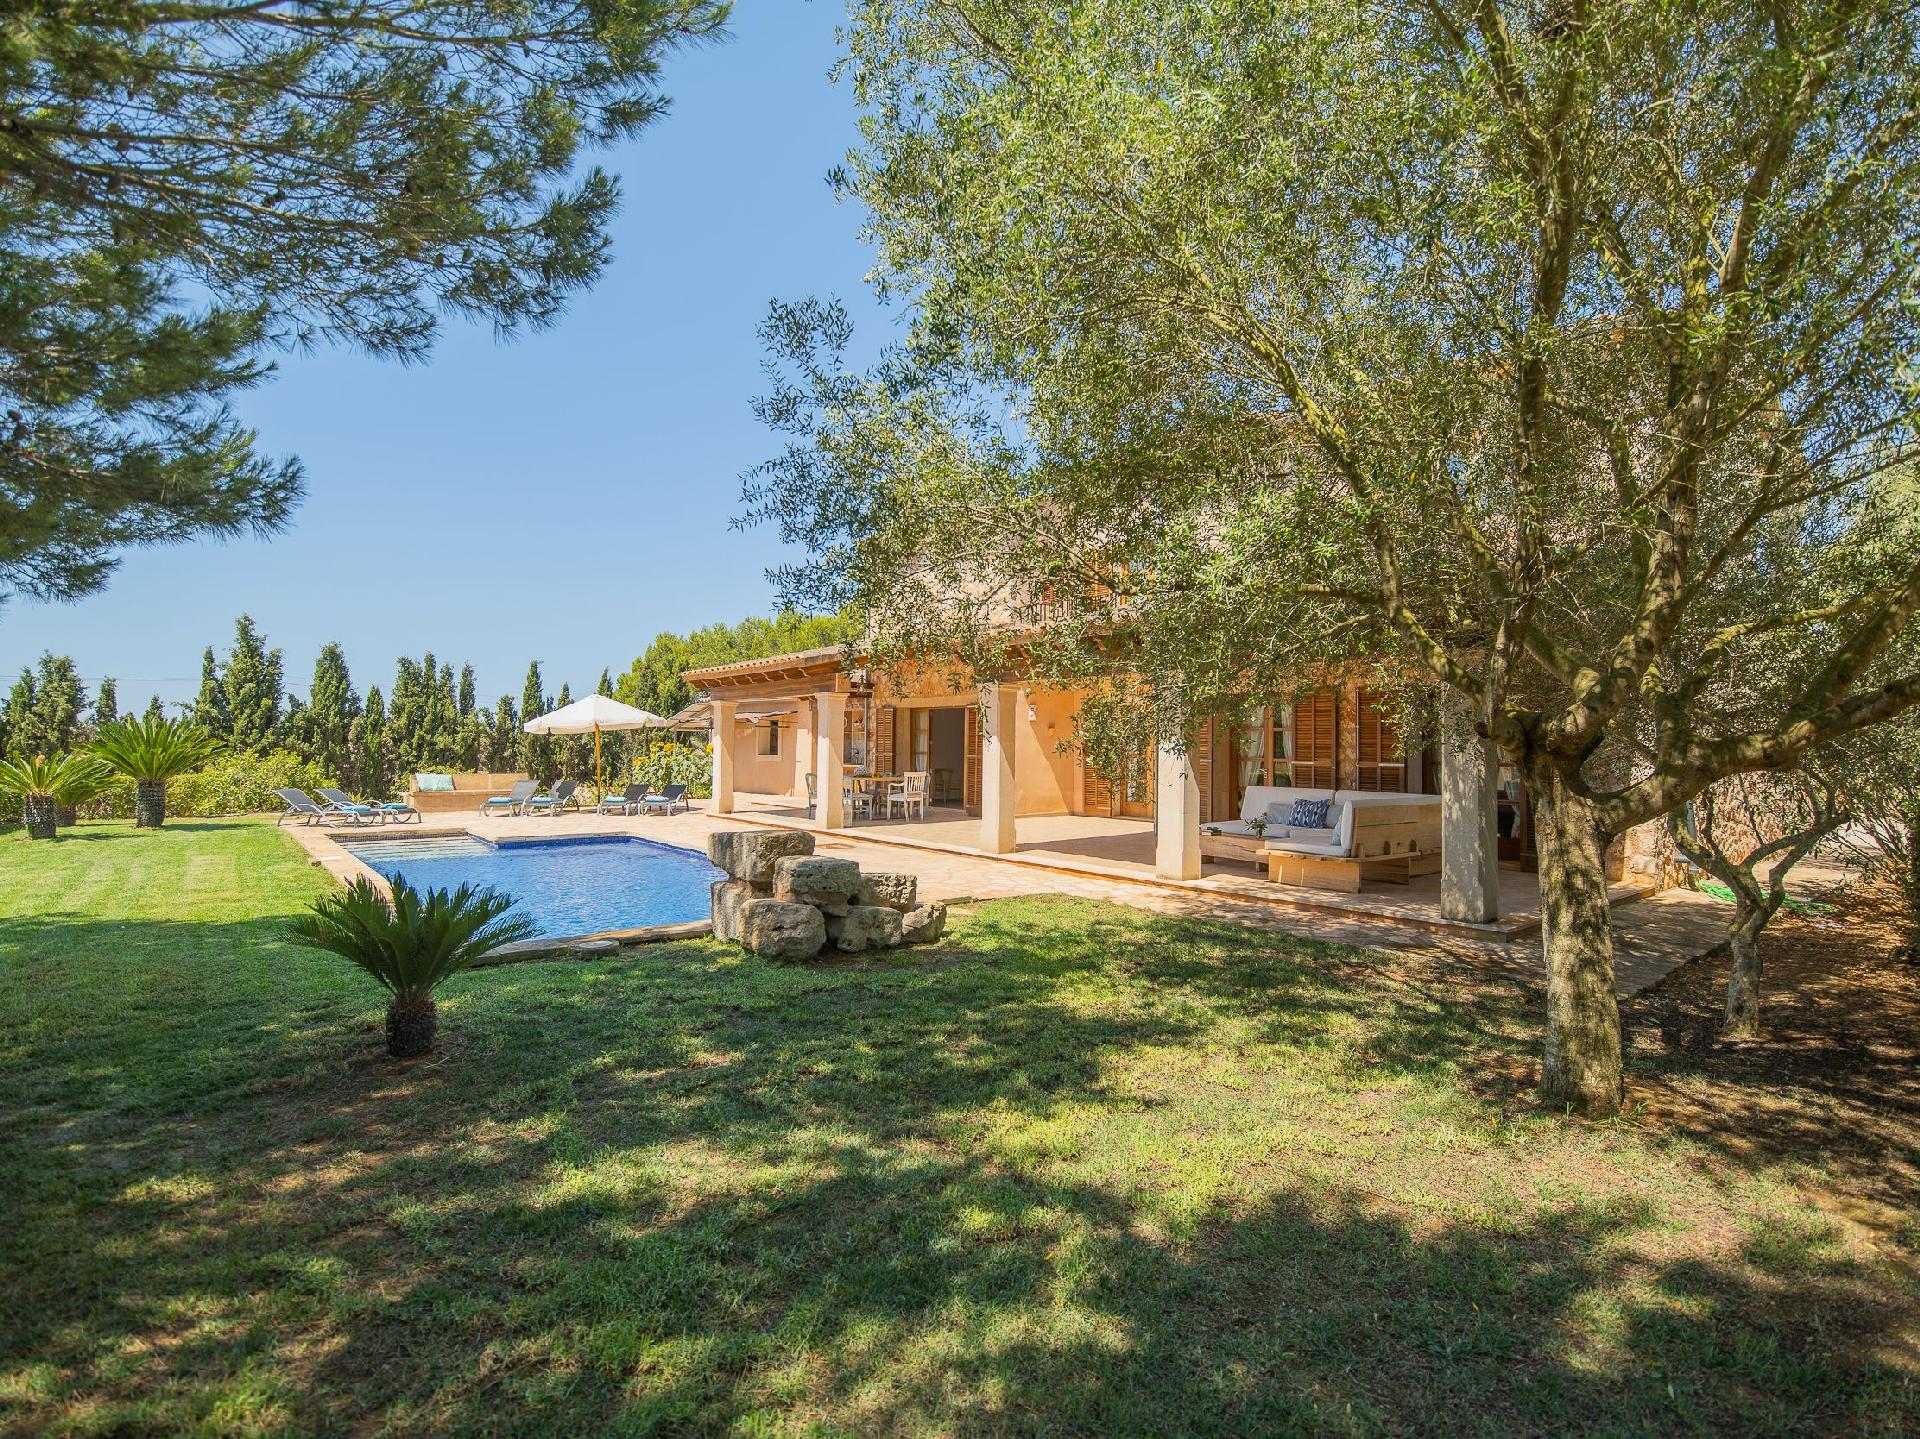 Luxuriöse Finca auf zwei Etagen mit Garten so Ferienhaus in Spanien